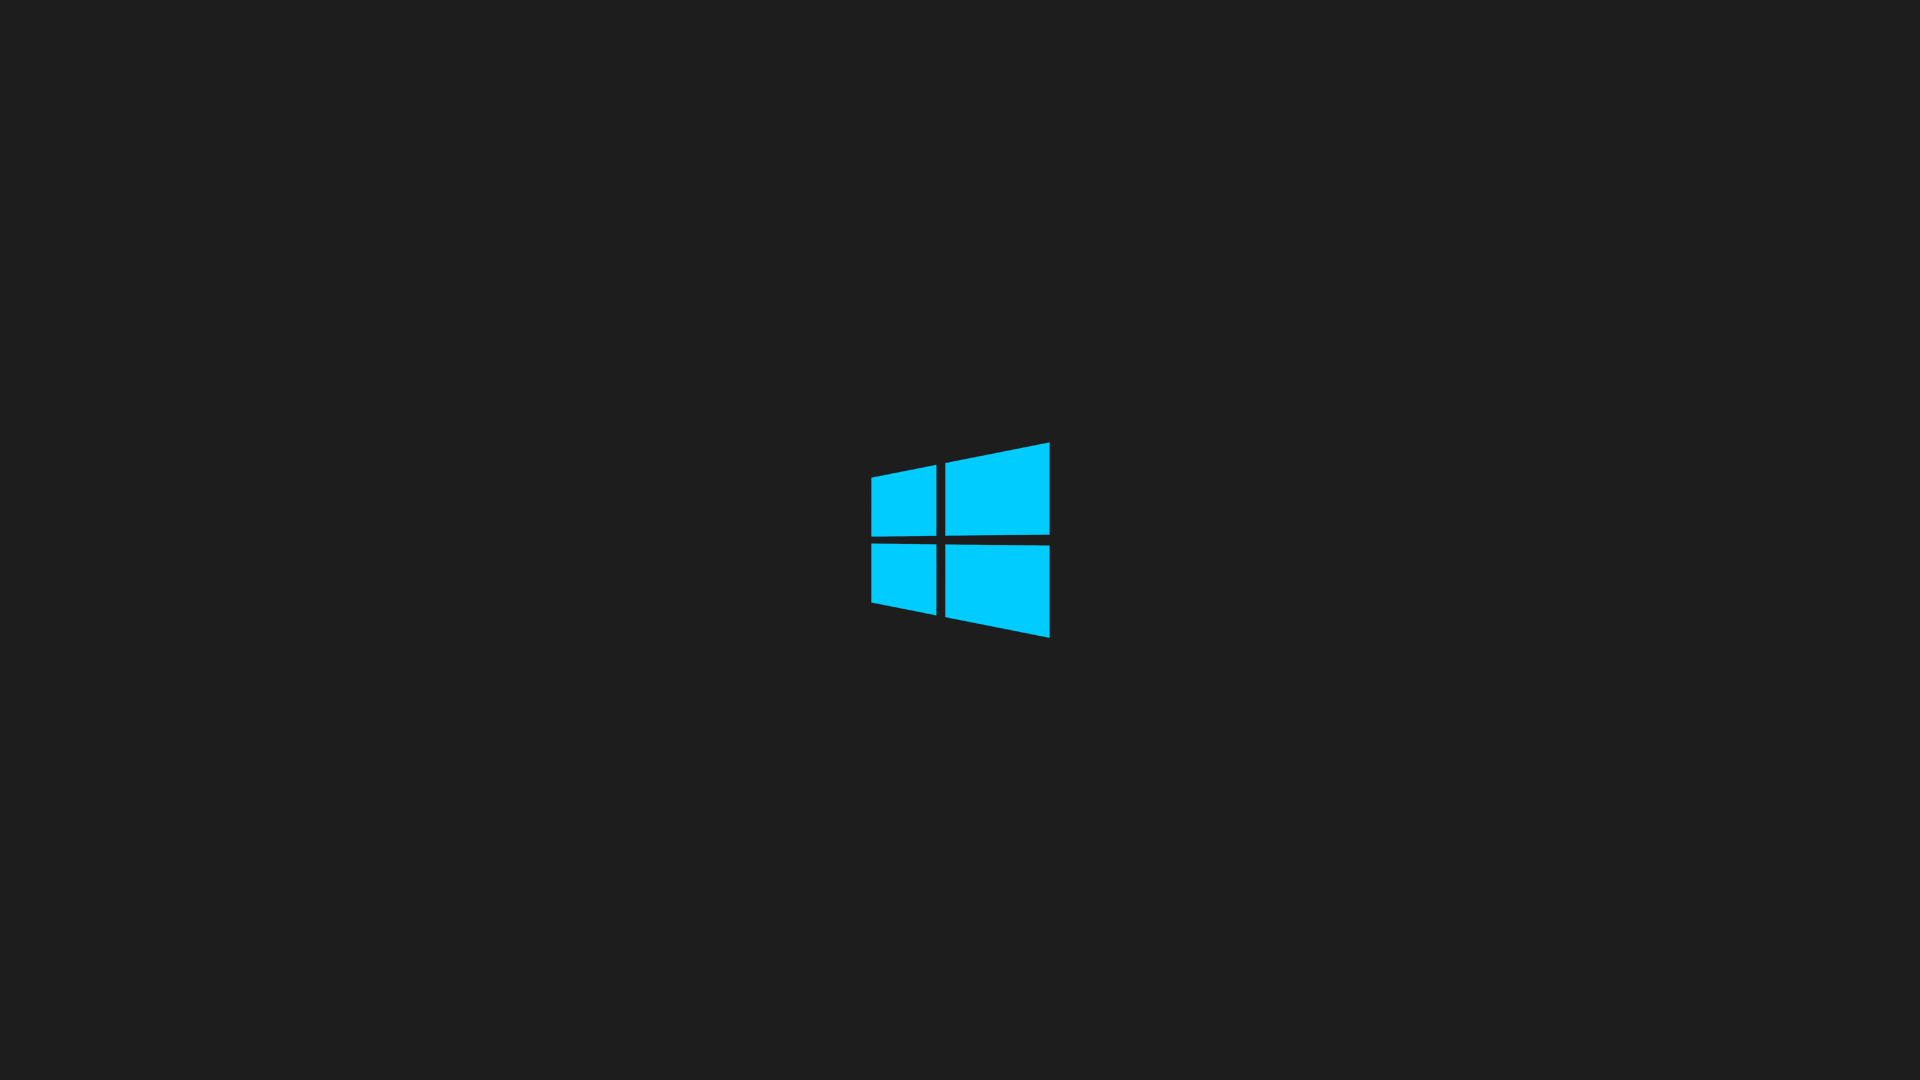 Wallpaper For > Windows 8 Wallpaper Black